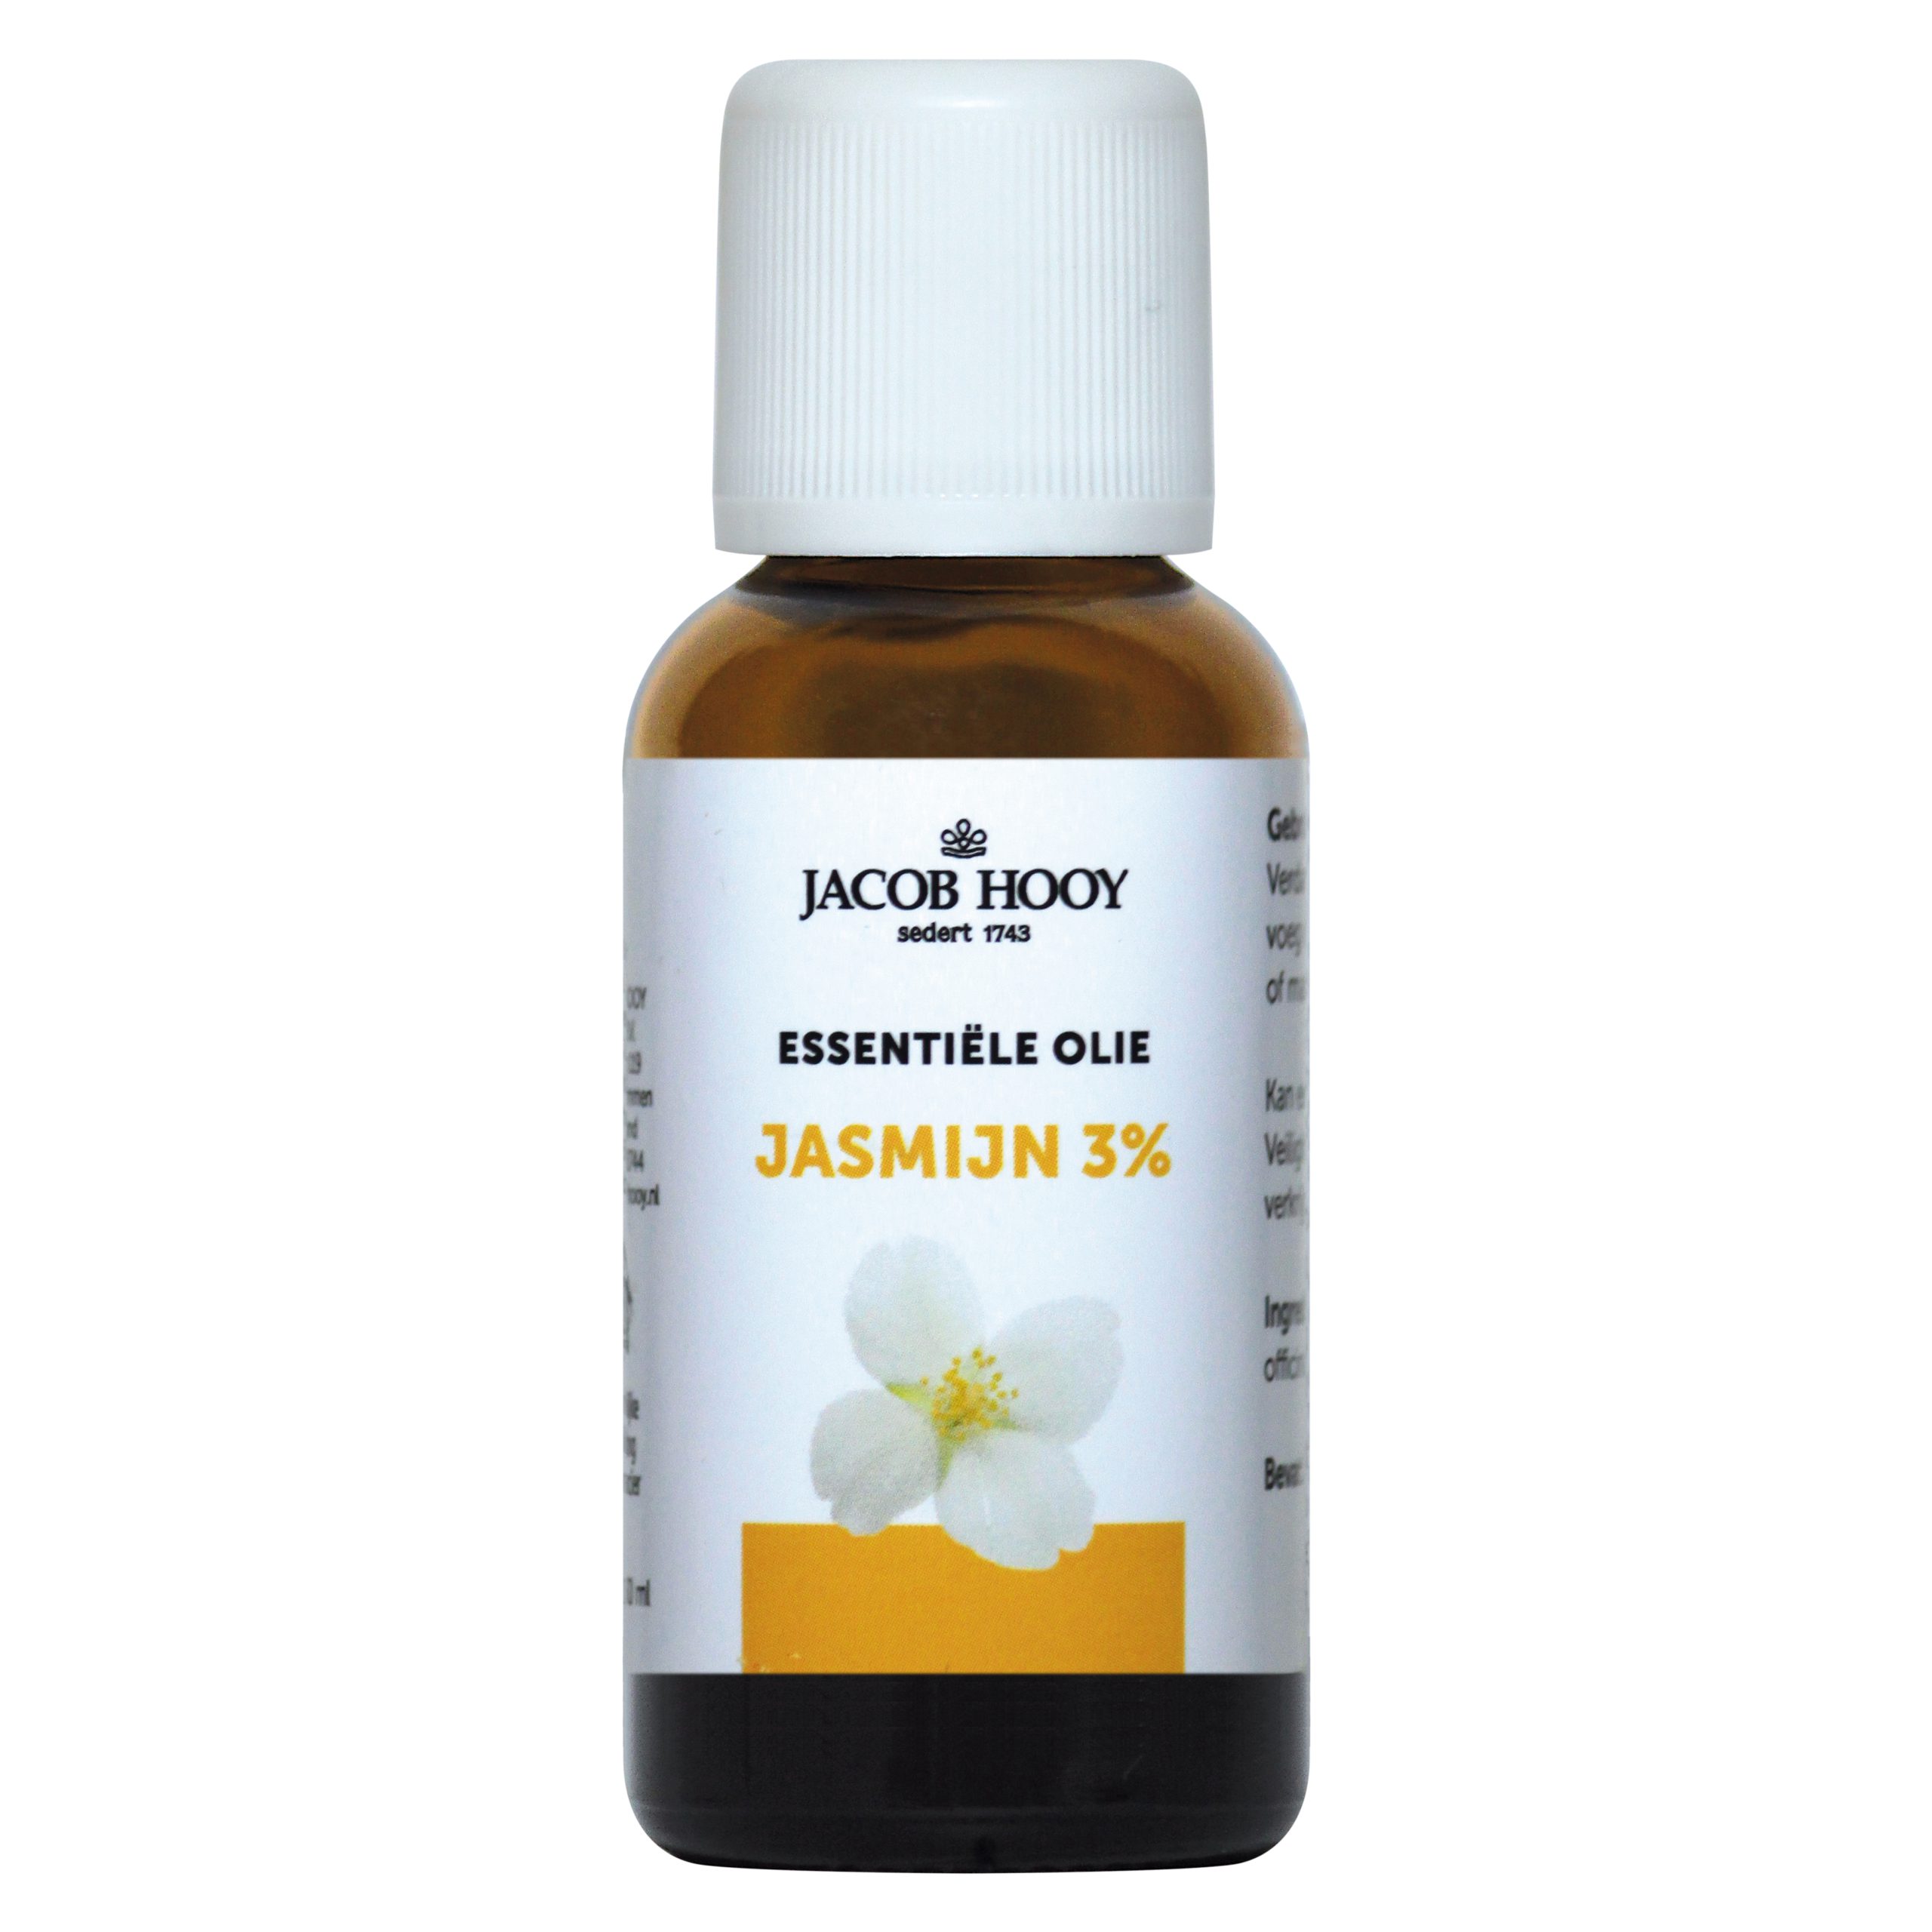 Buitensporig professioneel Imperial Essentiële olie Jasmijn 3% 30 ml - jacob-hooy